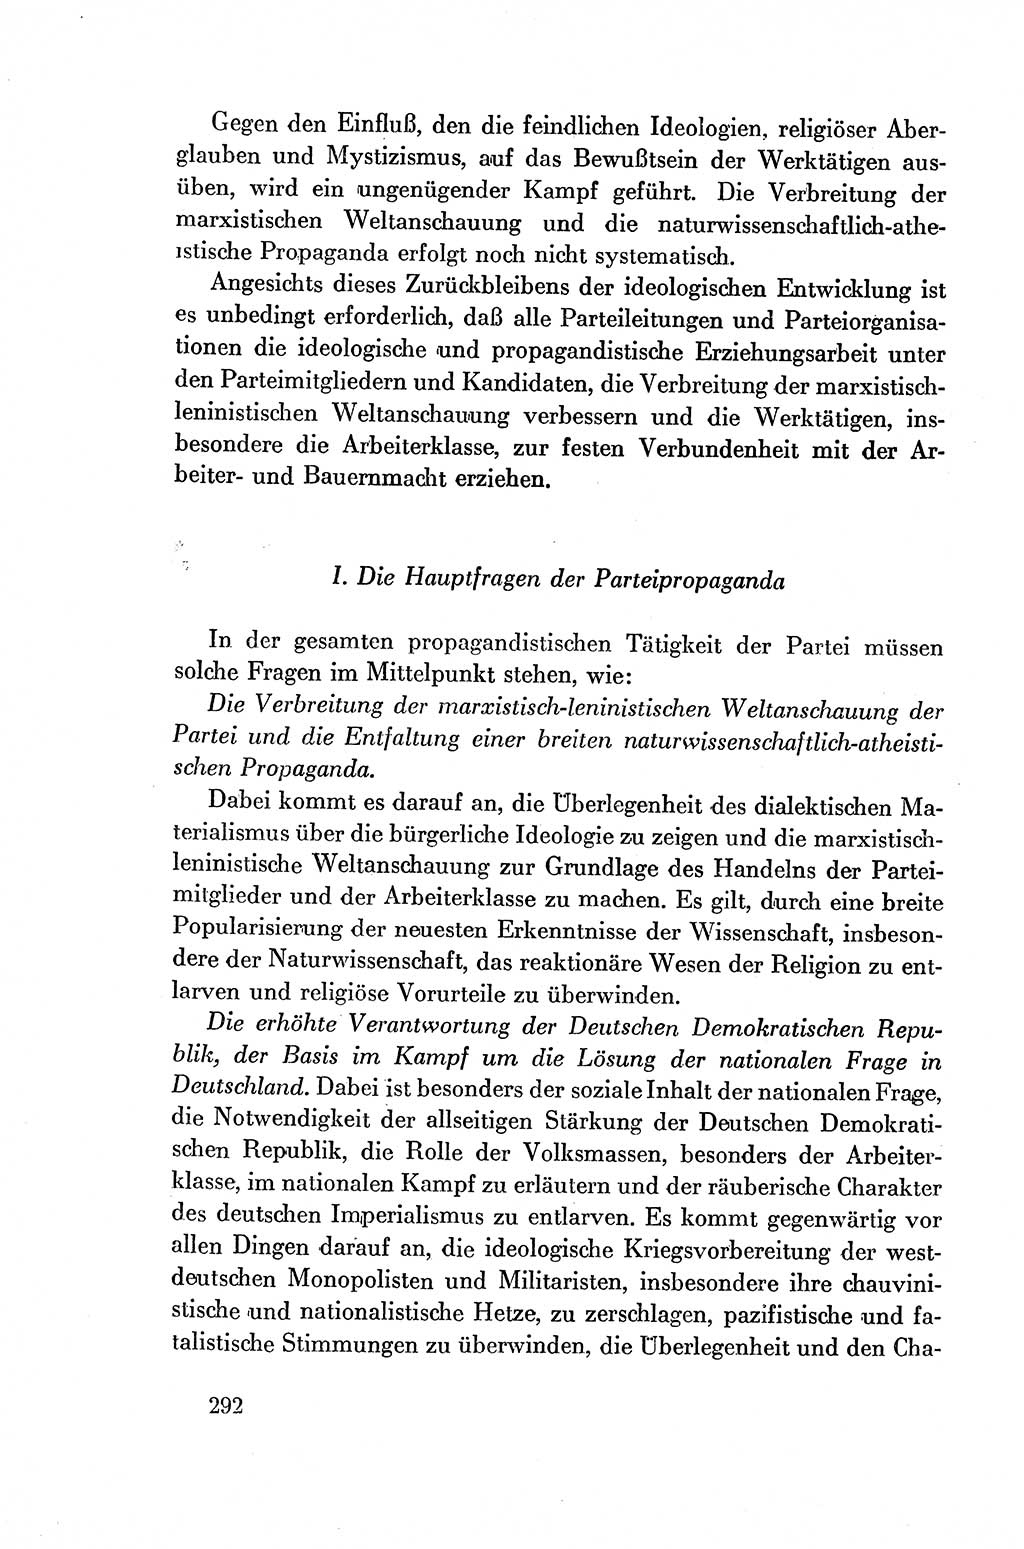 Dokumente der Sozialistischen Einheitspartei Deutschlands (SED) [Deutsche Demokratische Republik (DDR)] 1954-1955, Seite 292 (Dok. SED DDR 1954-1955, S. 292)